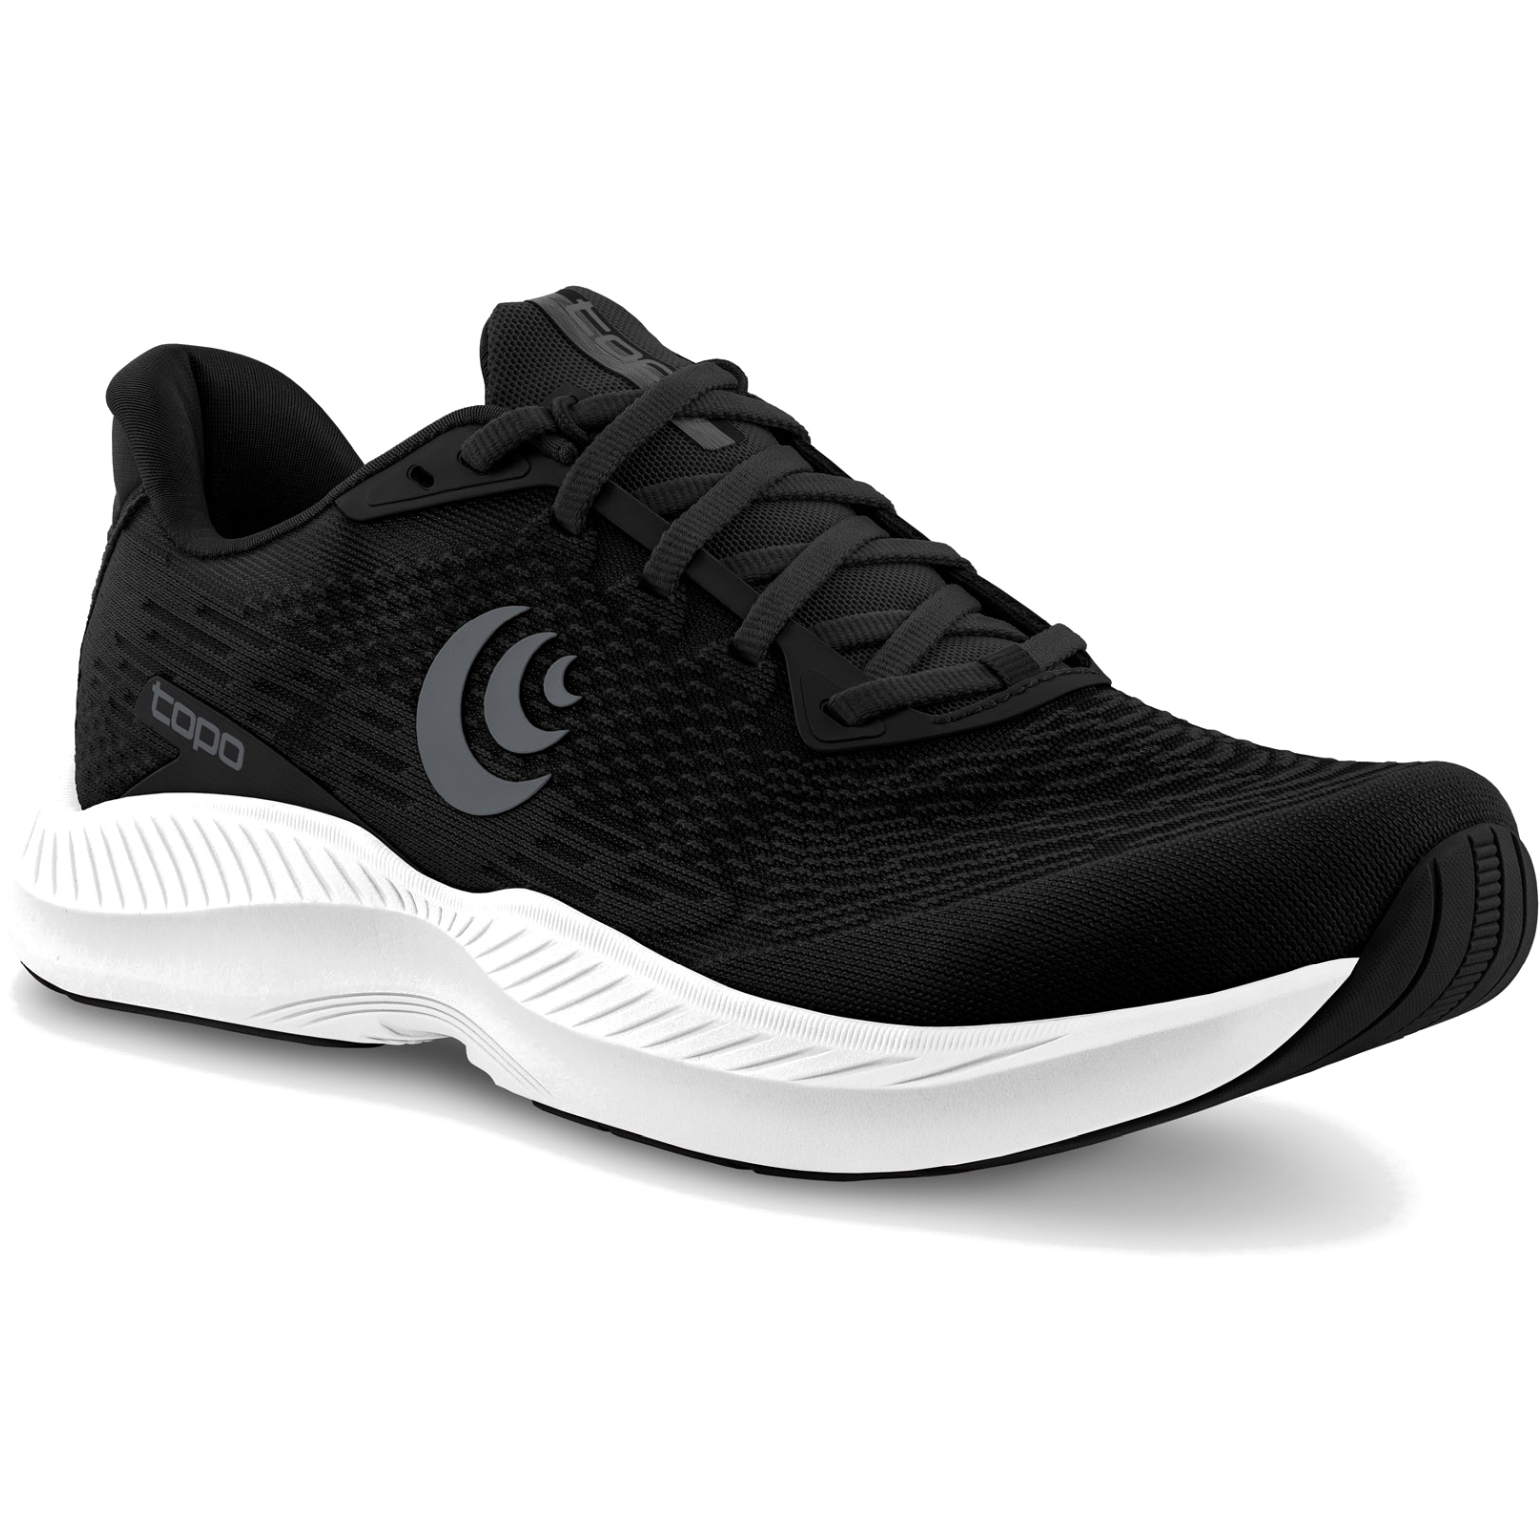 Productfoto van Topo Athletic Fli-Lyte 5 Hardloopschoenen - zwart/wit